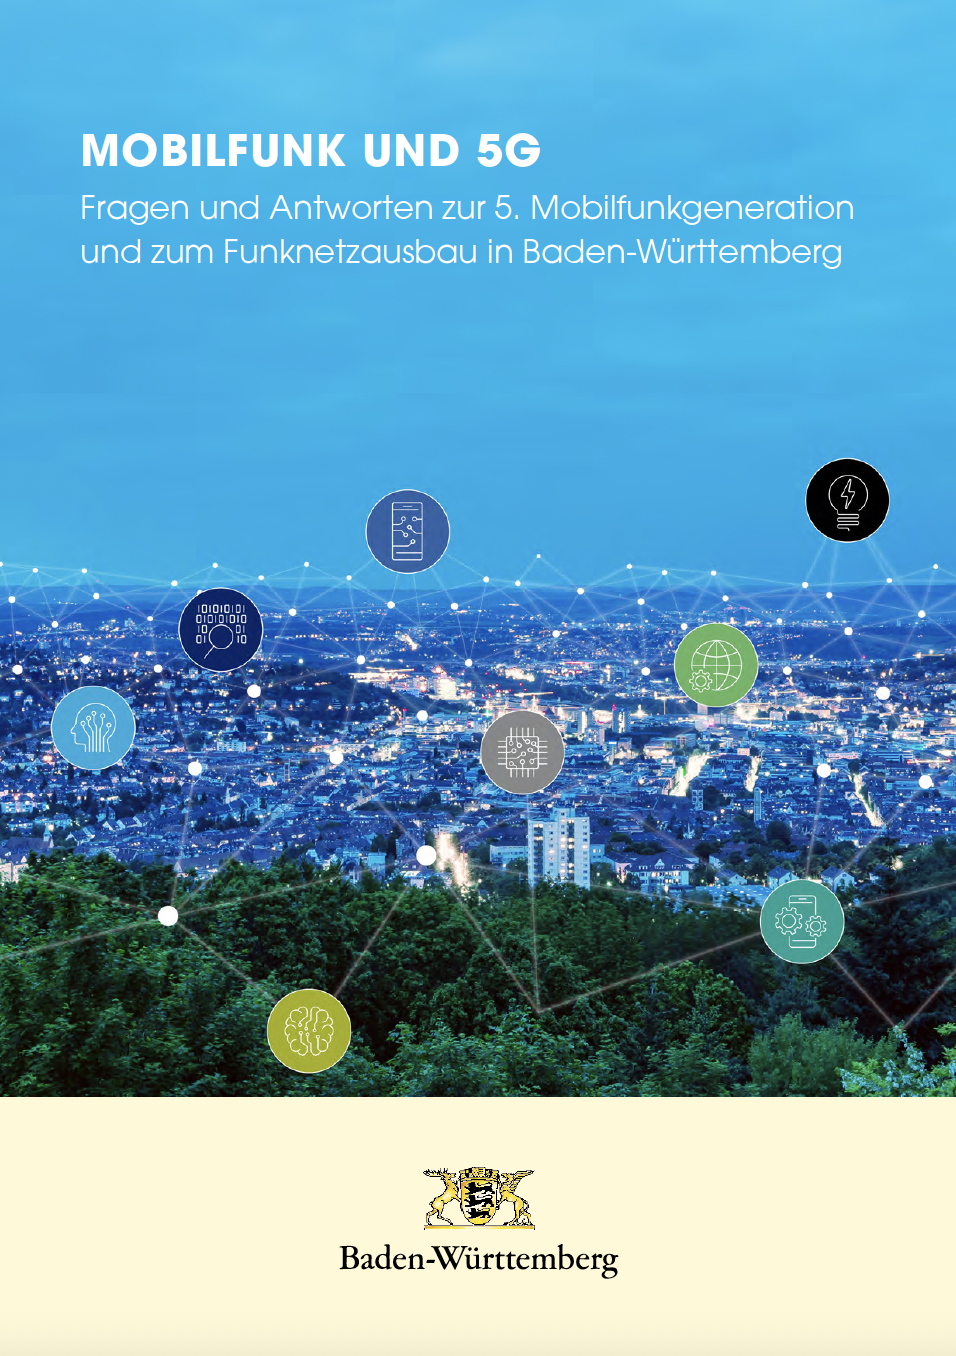 In dieser Broschüre aus Baden-Württemberg werden für die Bürgerinnen und Bürger Informationen zur 5G-Technologie und Mobilfunk allgemein gesammelt. Diese Broschüre ist Bestandteil der Informations- und Kommunikationsinitiative zum Thema 